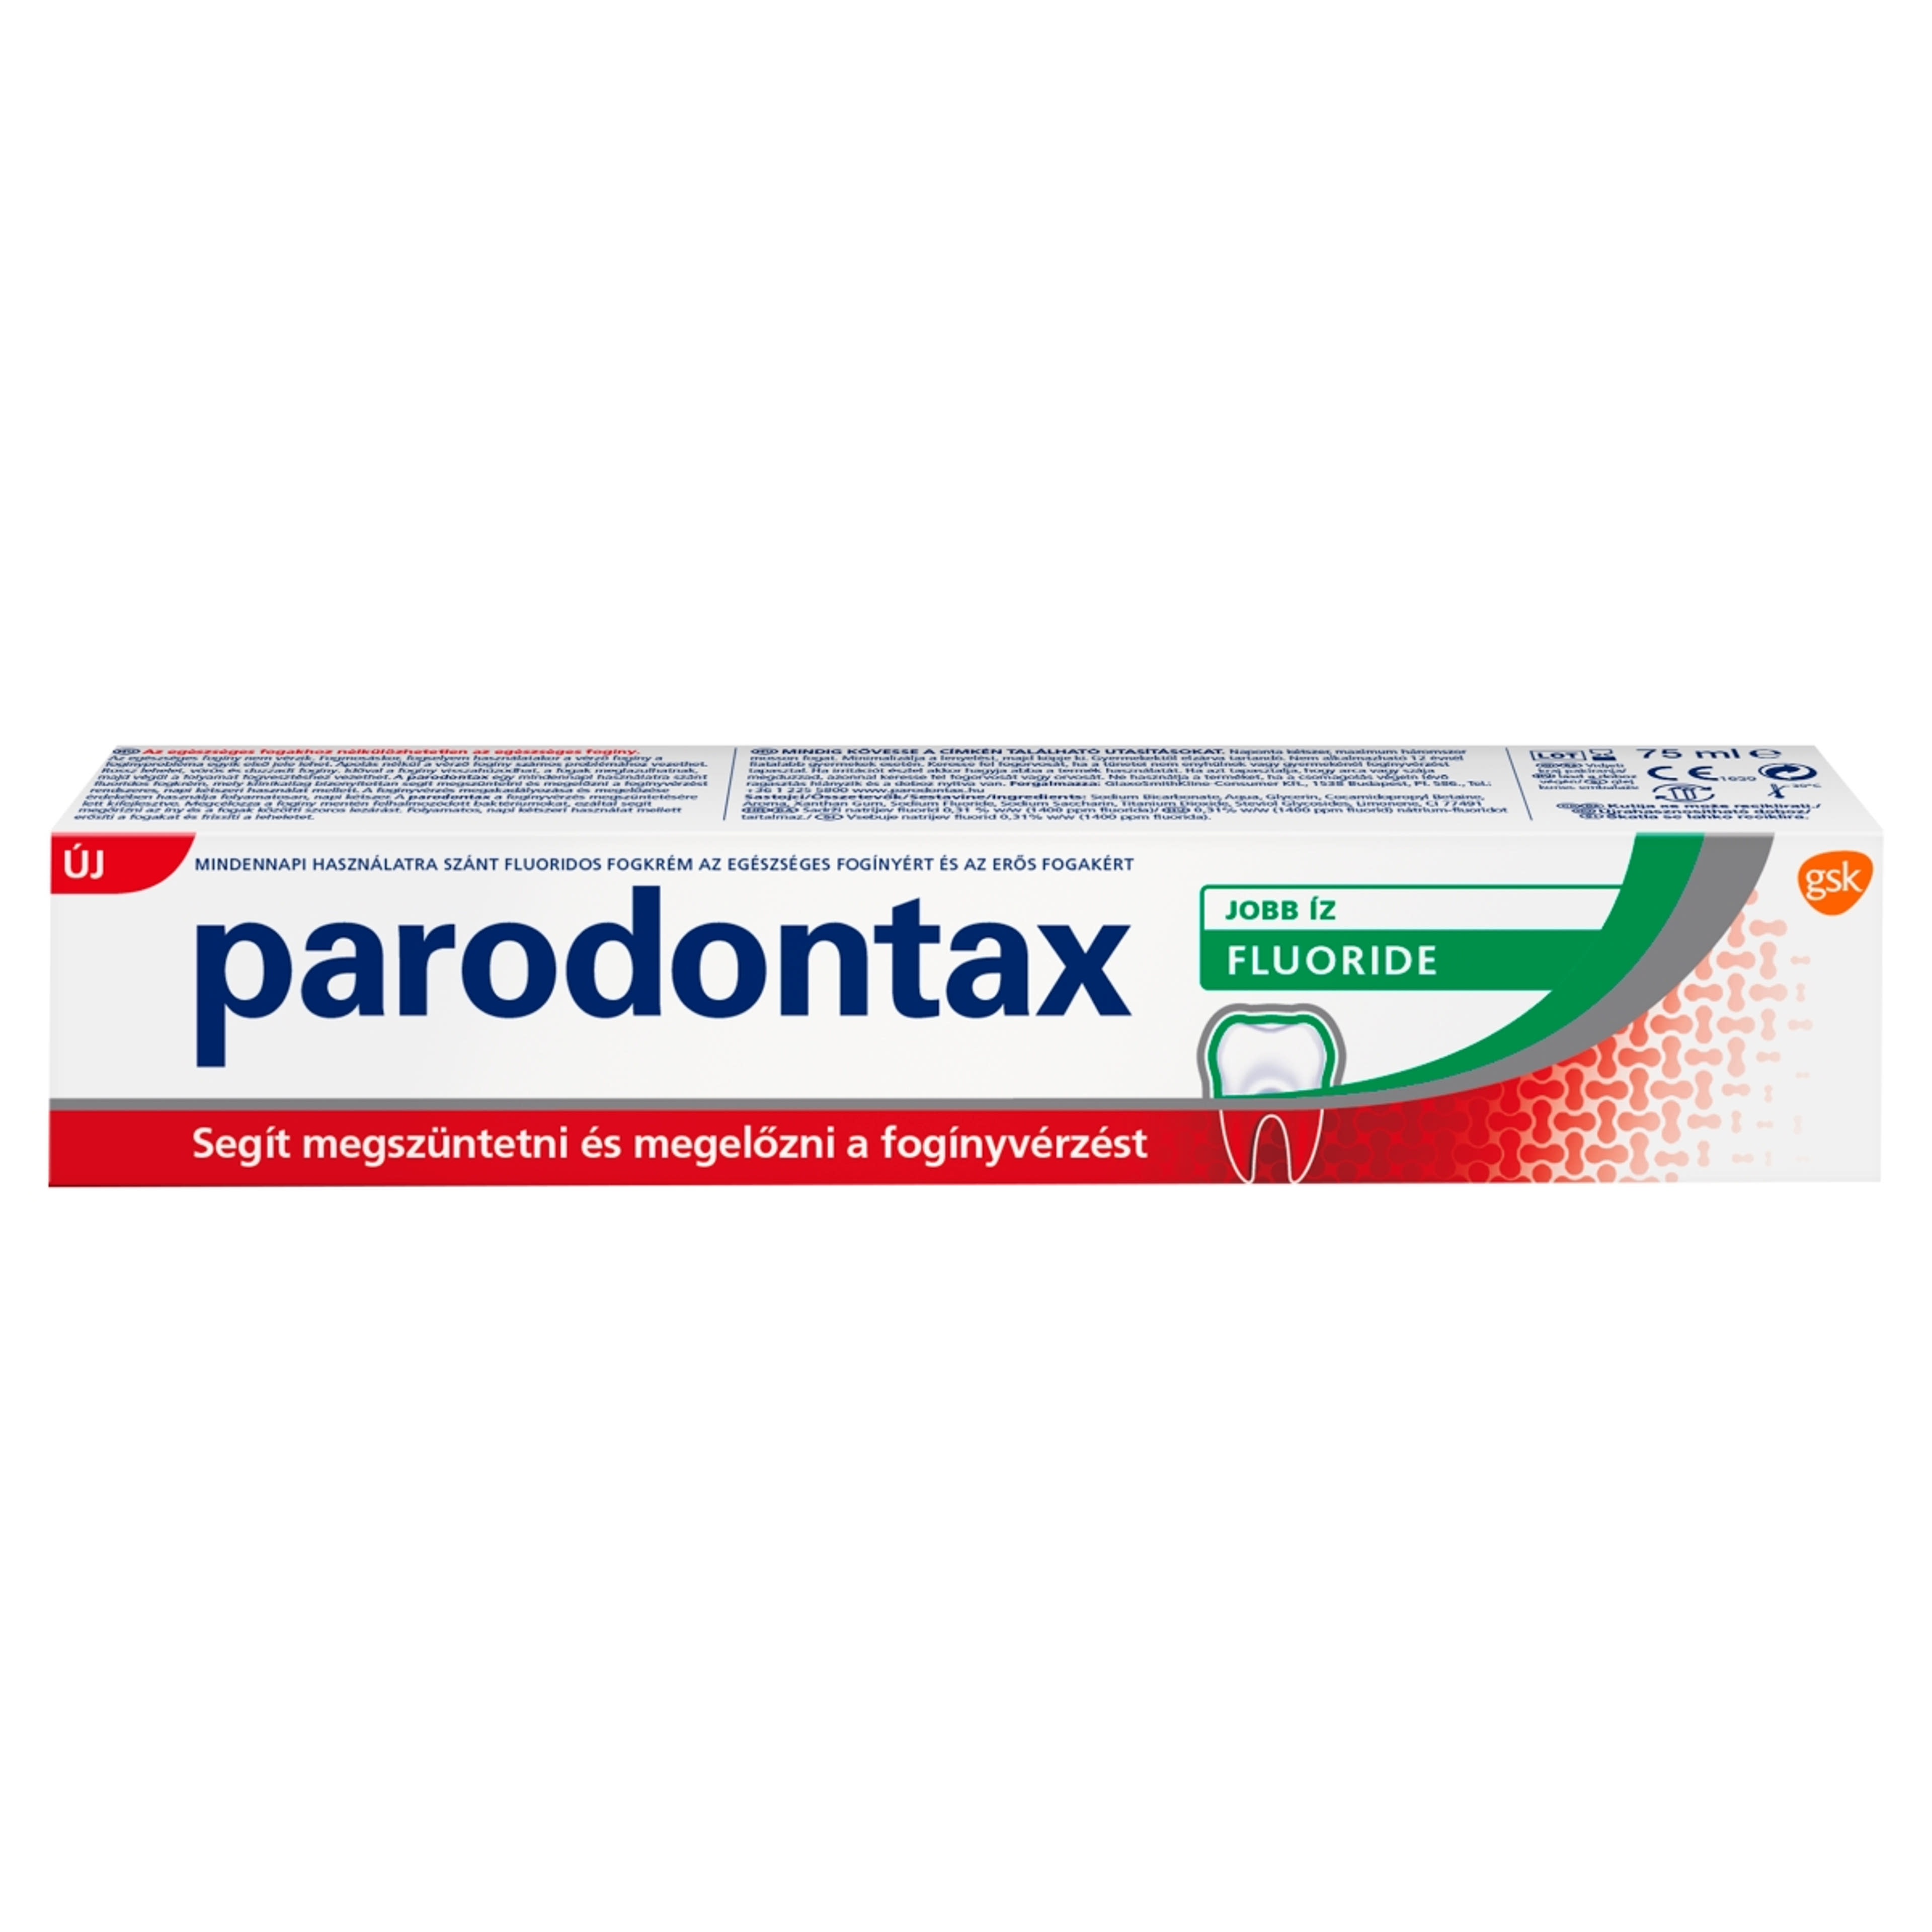 Parodontax Flouride fogkrém - 75 ml